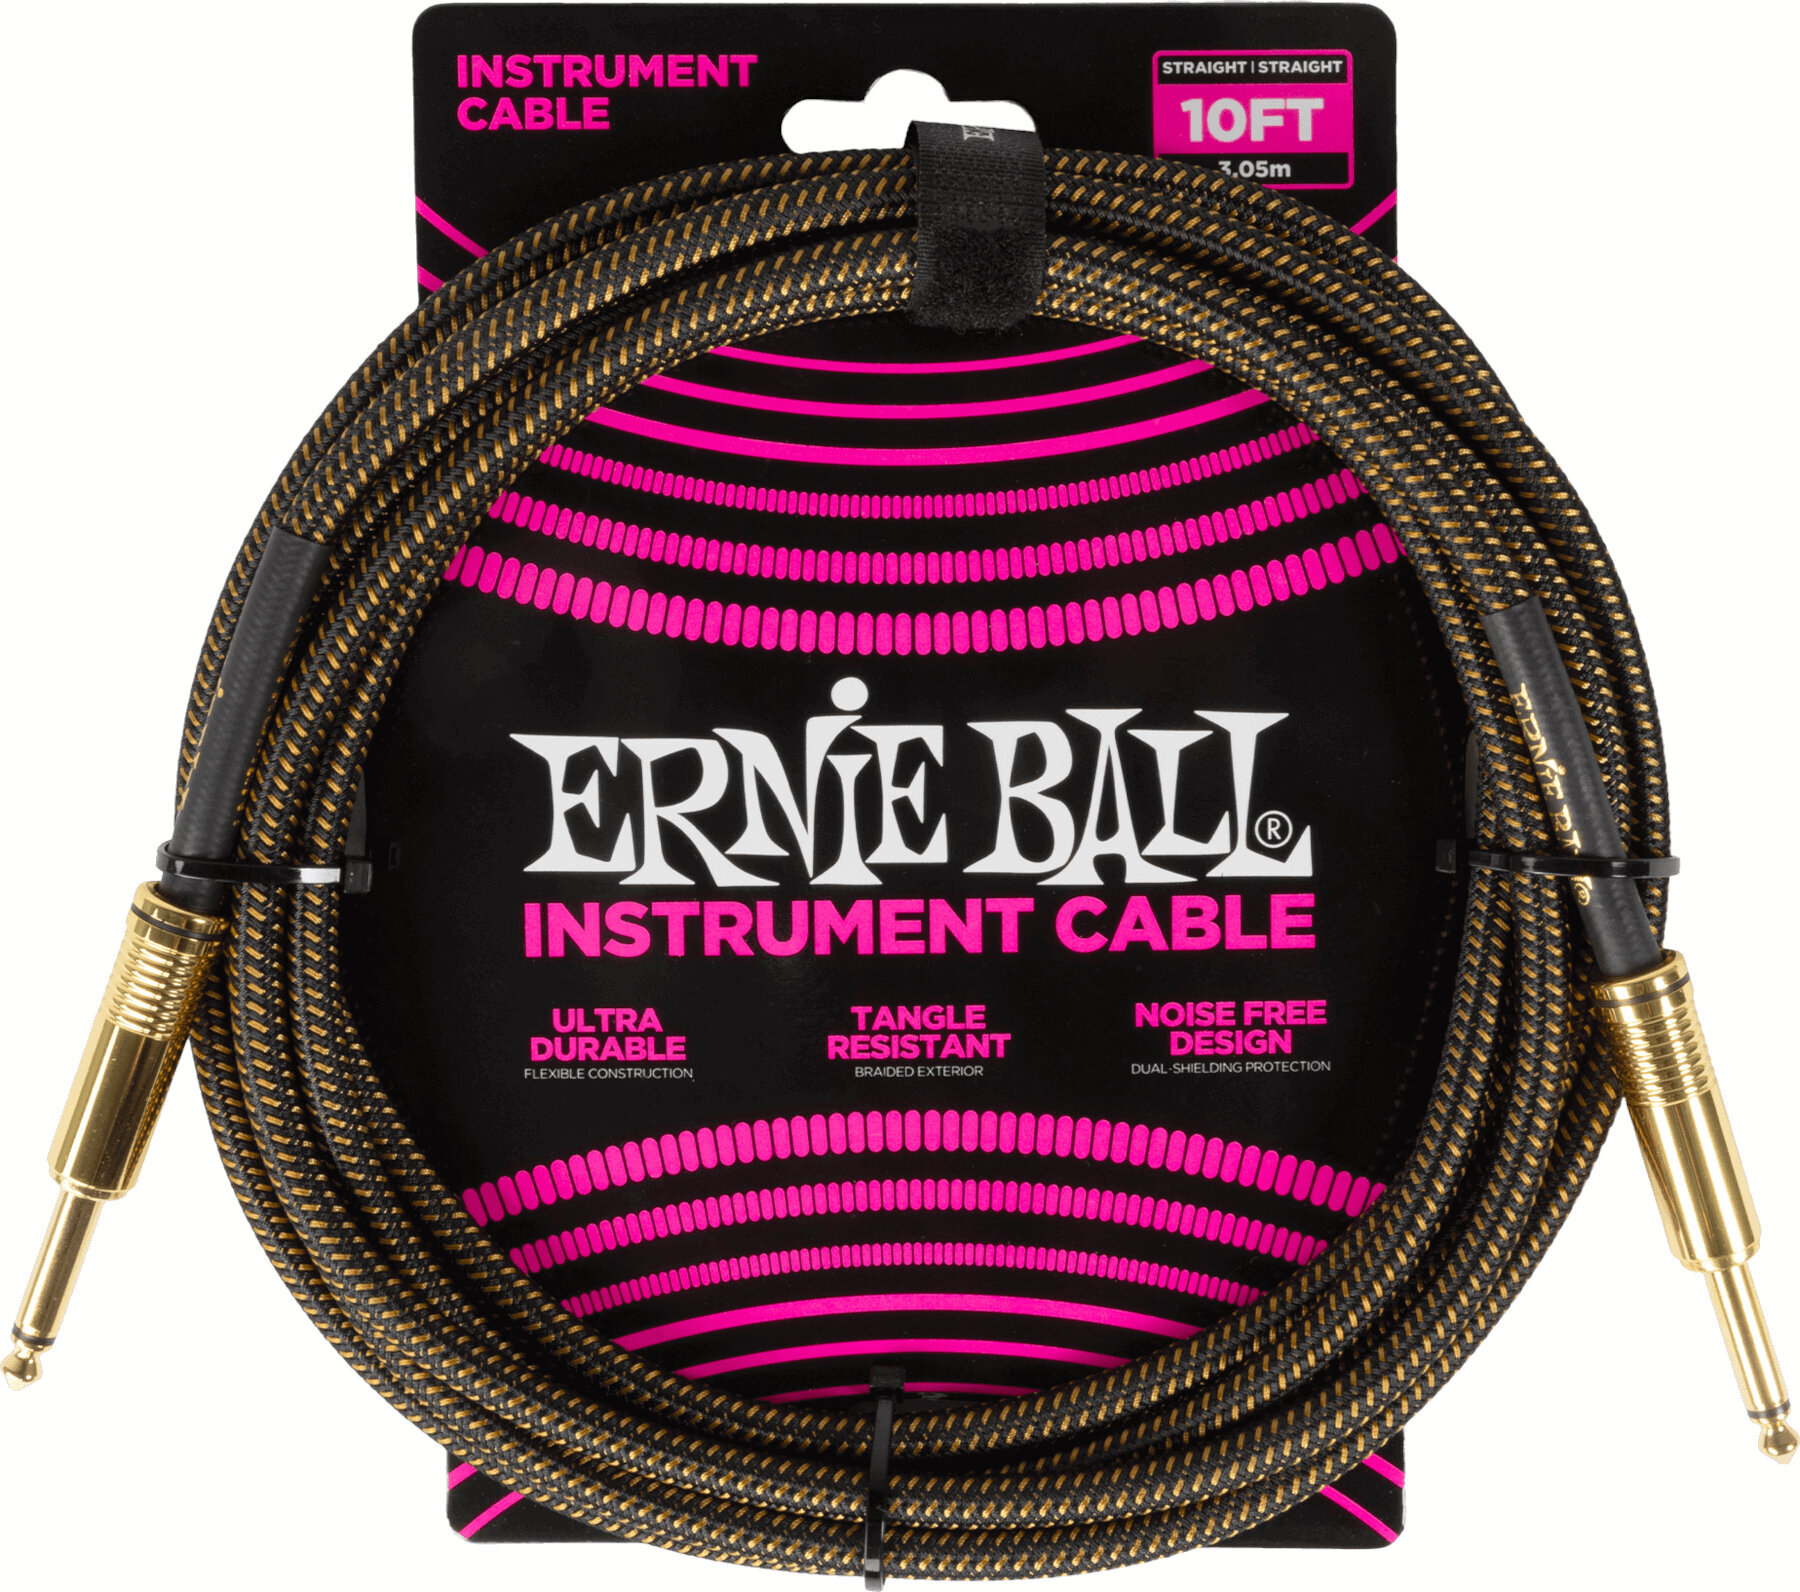 Cavo Strumenti Ernie Ball Braided Instrument Cable Straight/Straight Marrone 3 m Dritto - Dritto